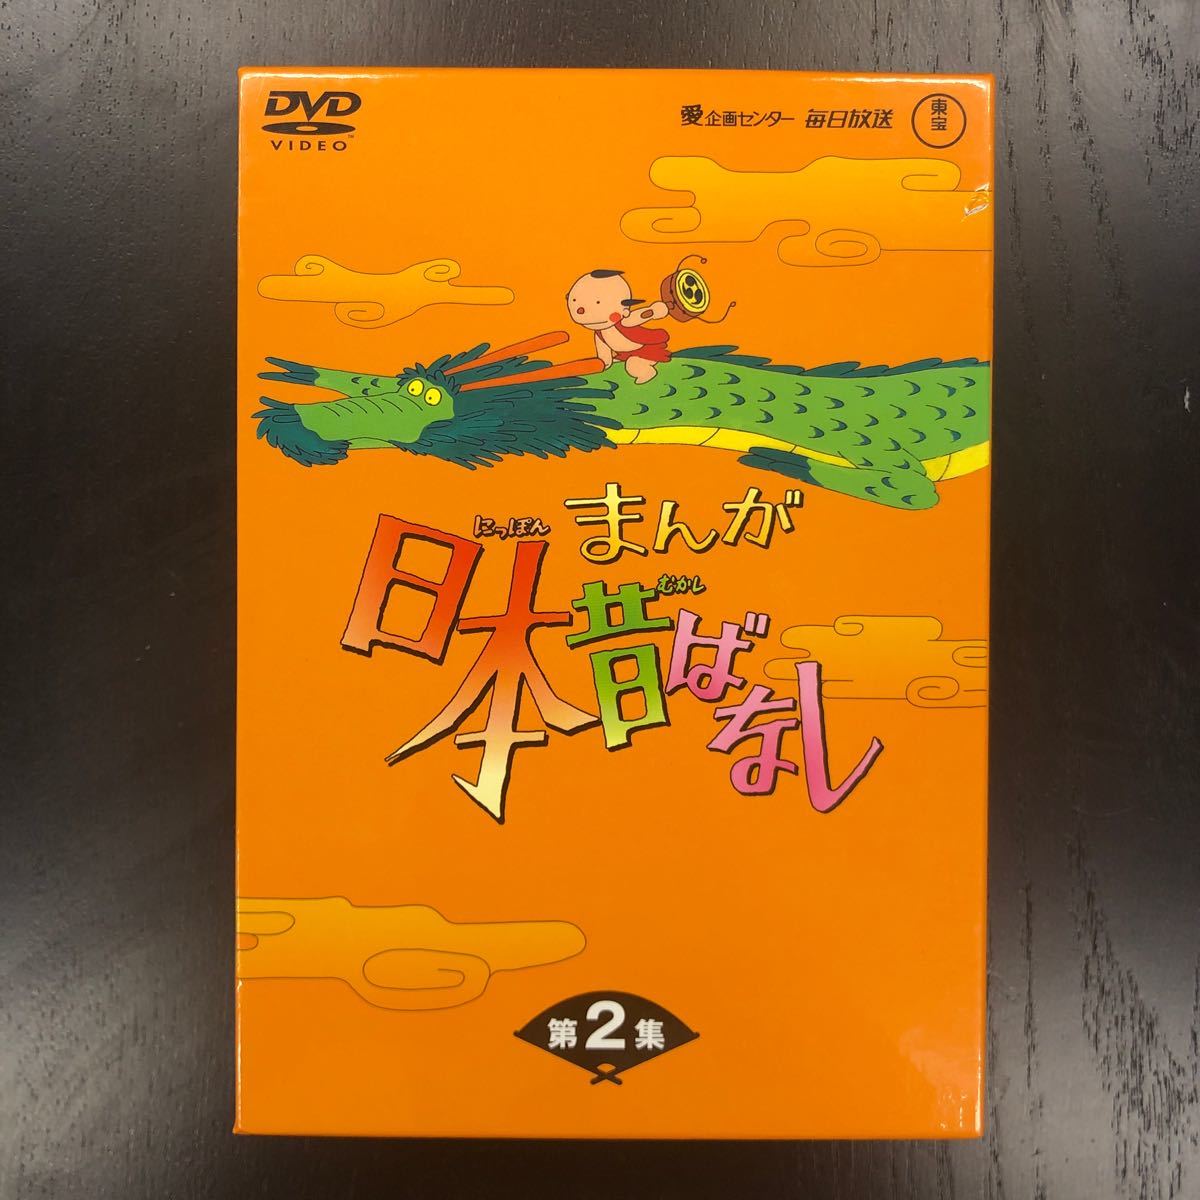 まんが日本昔ばなし DVD-BOX 第2集 5枚組